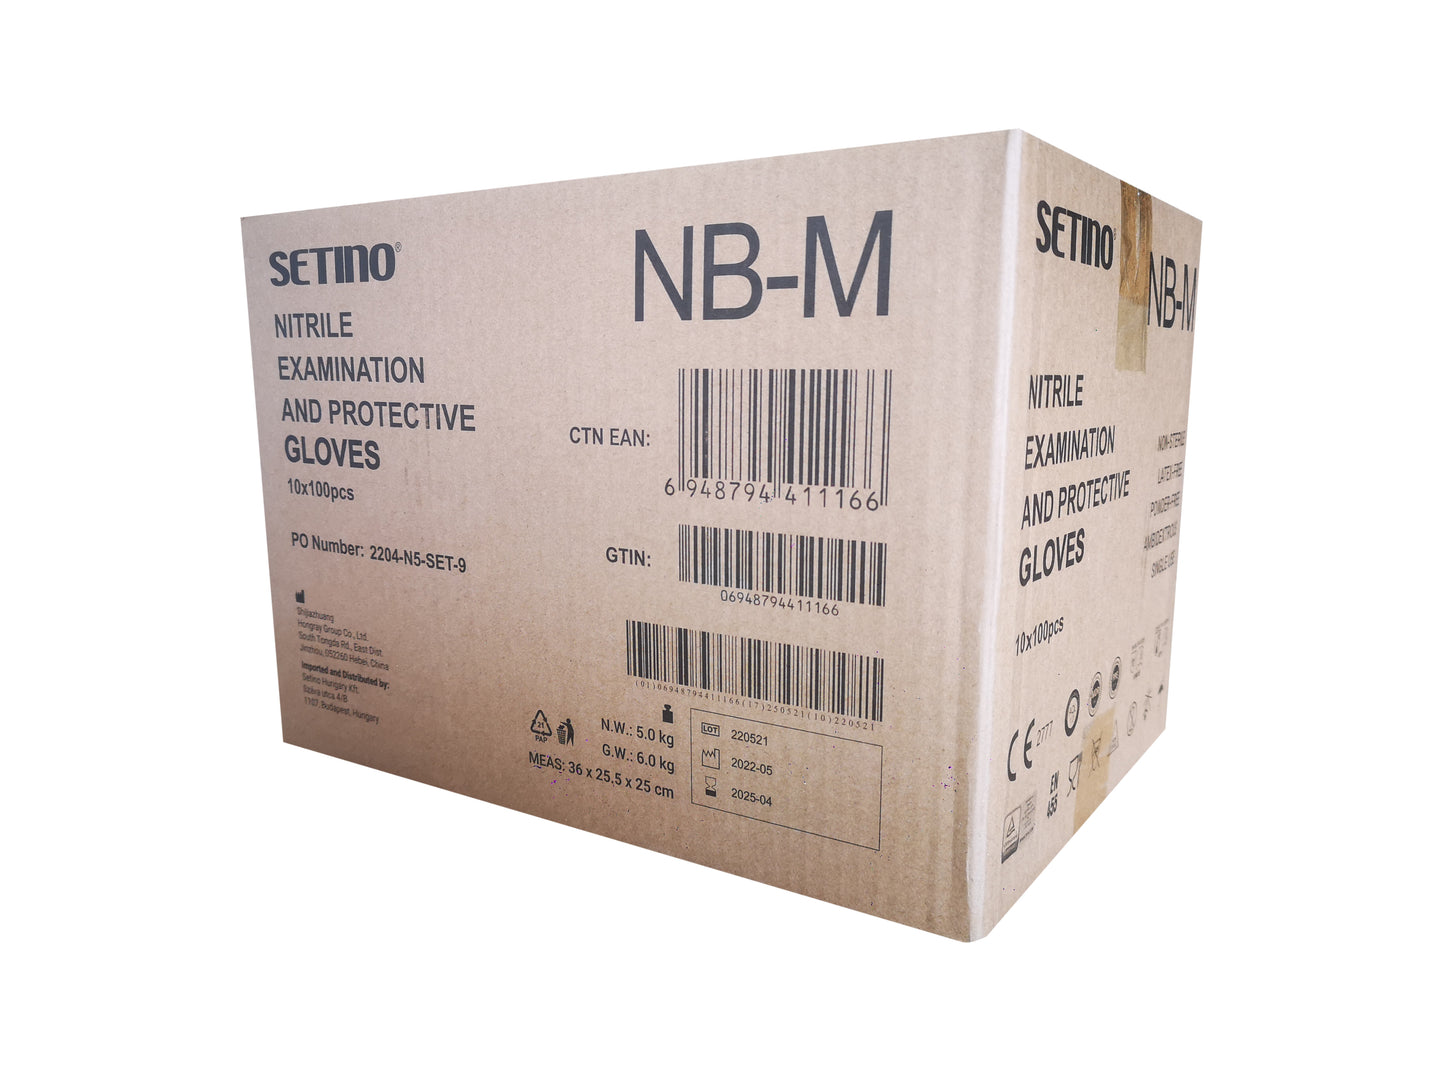 NPF4001-4005 undersøgelses- og beskyttelseshandske af nitril, pulverfri sort 5 gram